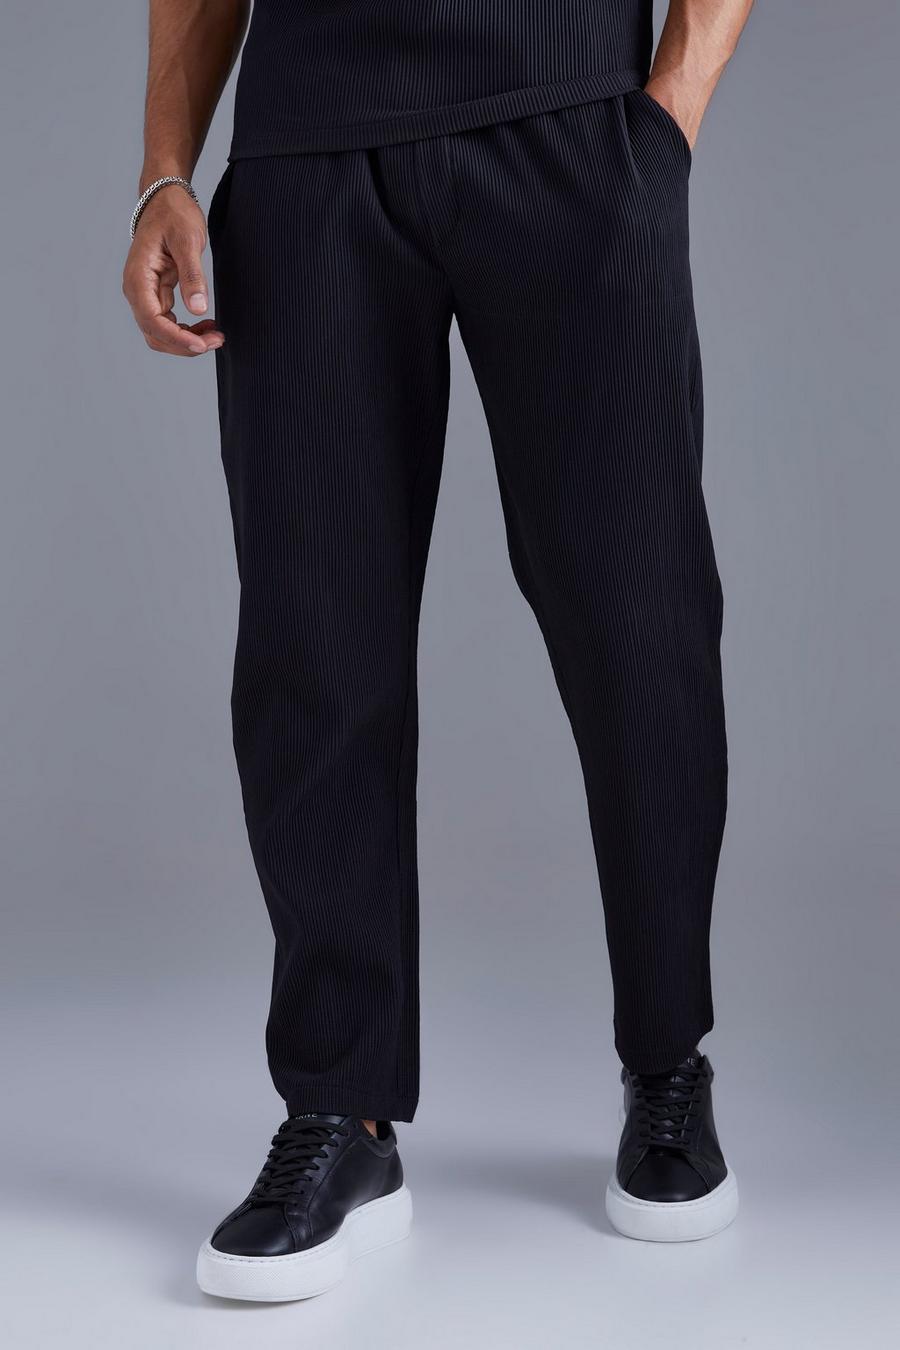 Pantalón plisado ajustado con cintura elástica, Black negro image number 1